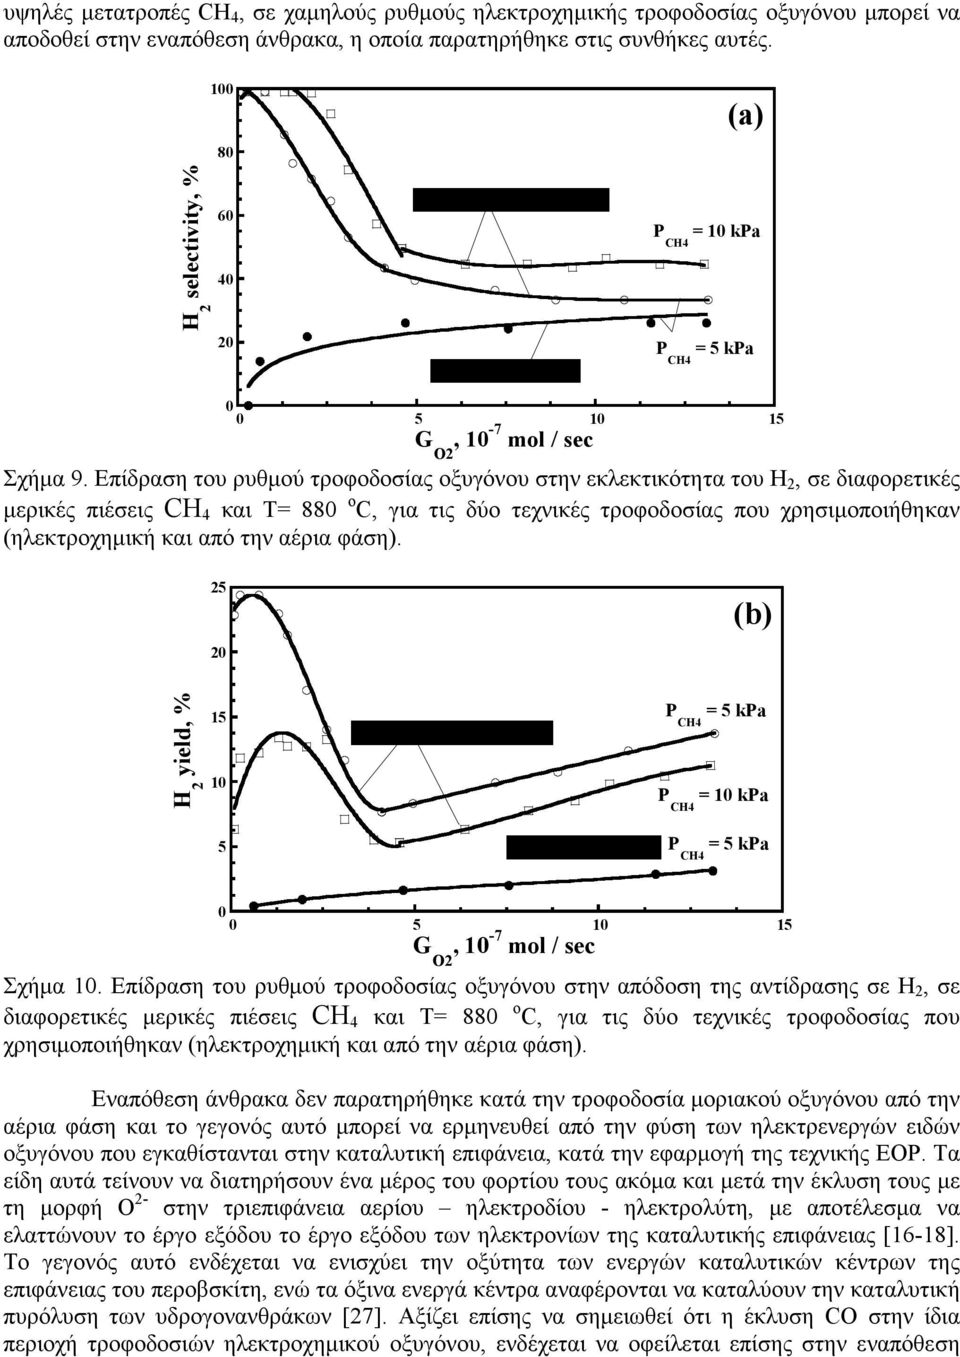 Επίδραση του ρυθμού τροφοδοσίας οξυγόνου στην εκλεκτικότητα του, σε διαφορετικές μερικές πιέσεις CH 4 και Τ= 88 ο C, για τις δύο τεχνικές τροφοδοσίας που χρησιμοποιήθηκαν (ηλεκτροχημική και από την